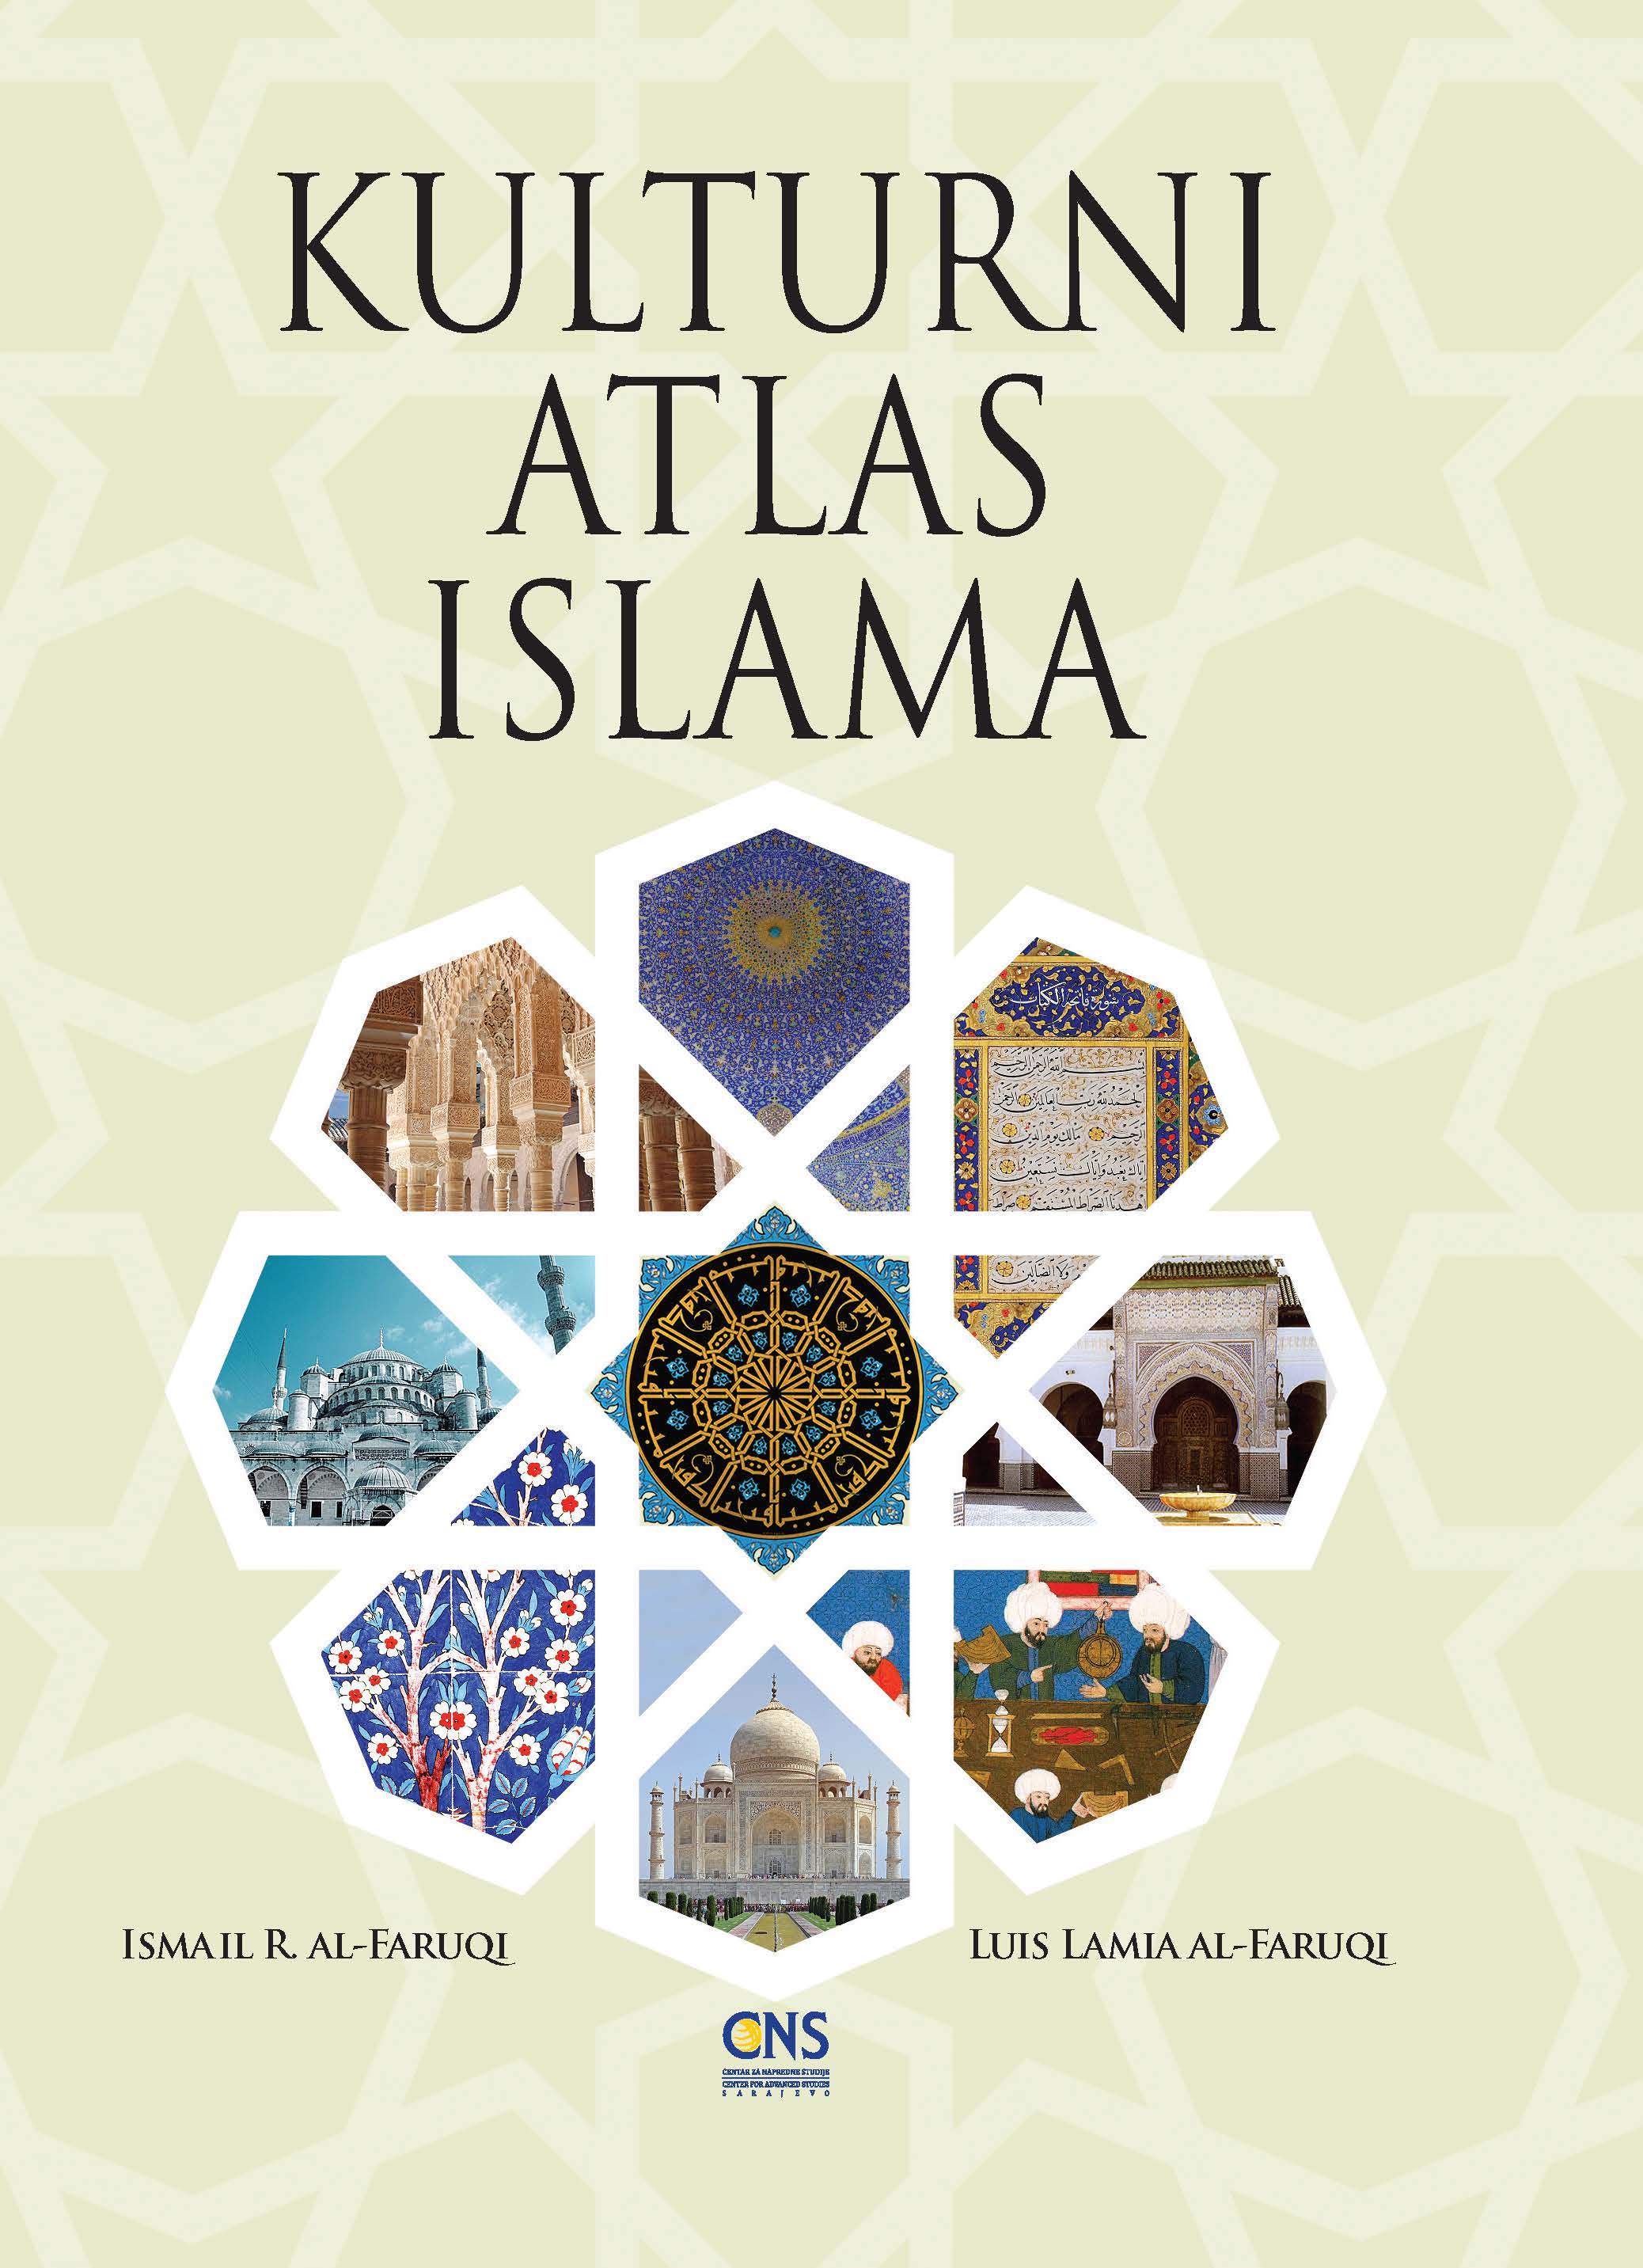 Bosnian: Kulturni atlas islama (The Cultural Atlas of Islam)